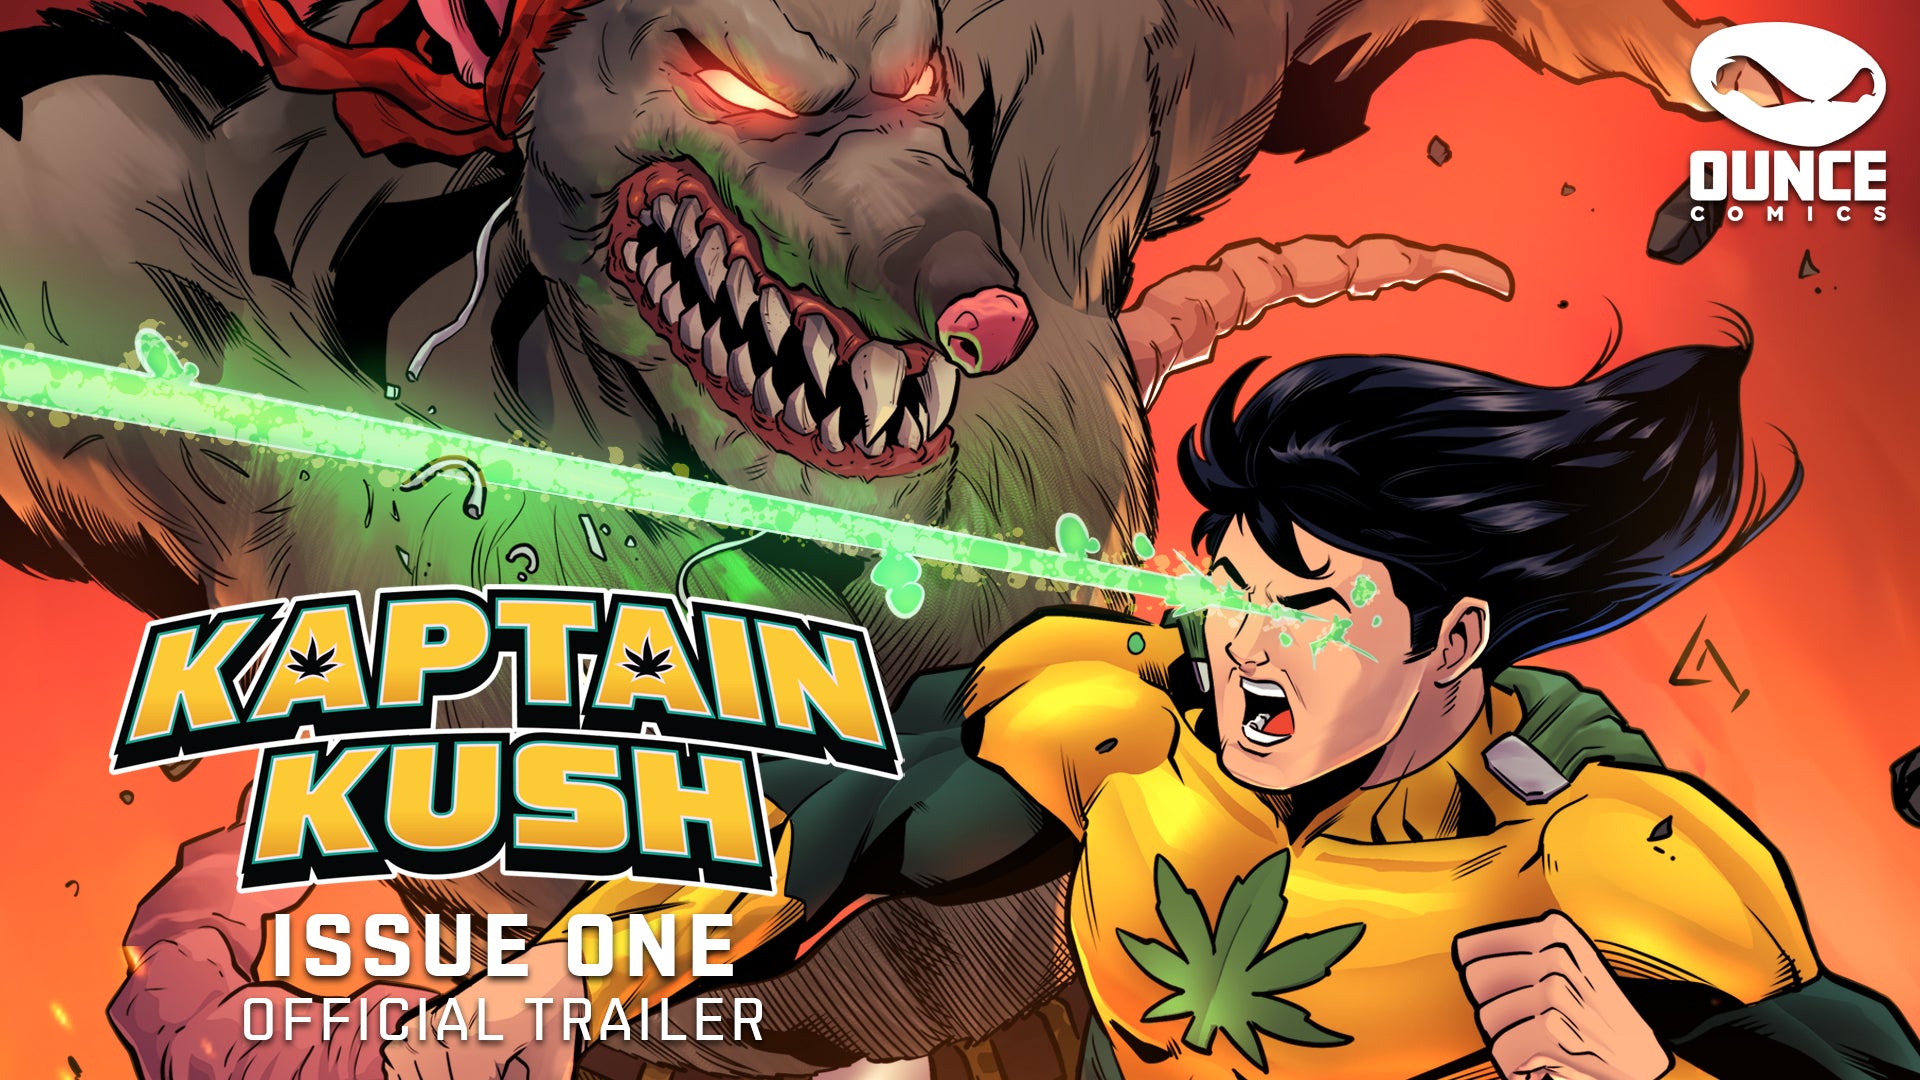 Kaptain Kush #1 - Official Comic Trailer